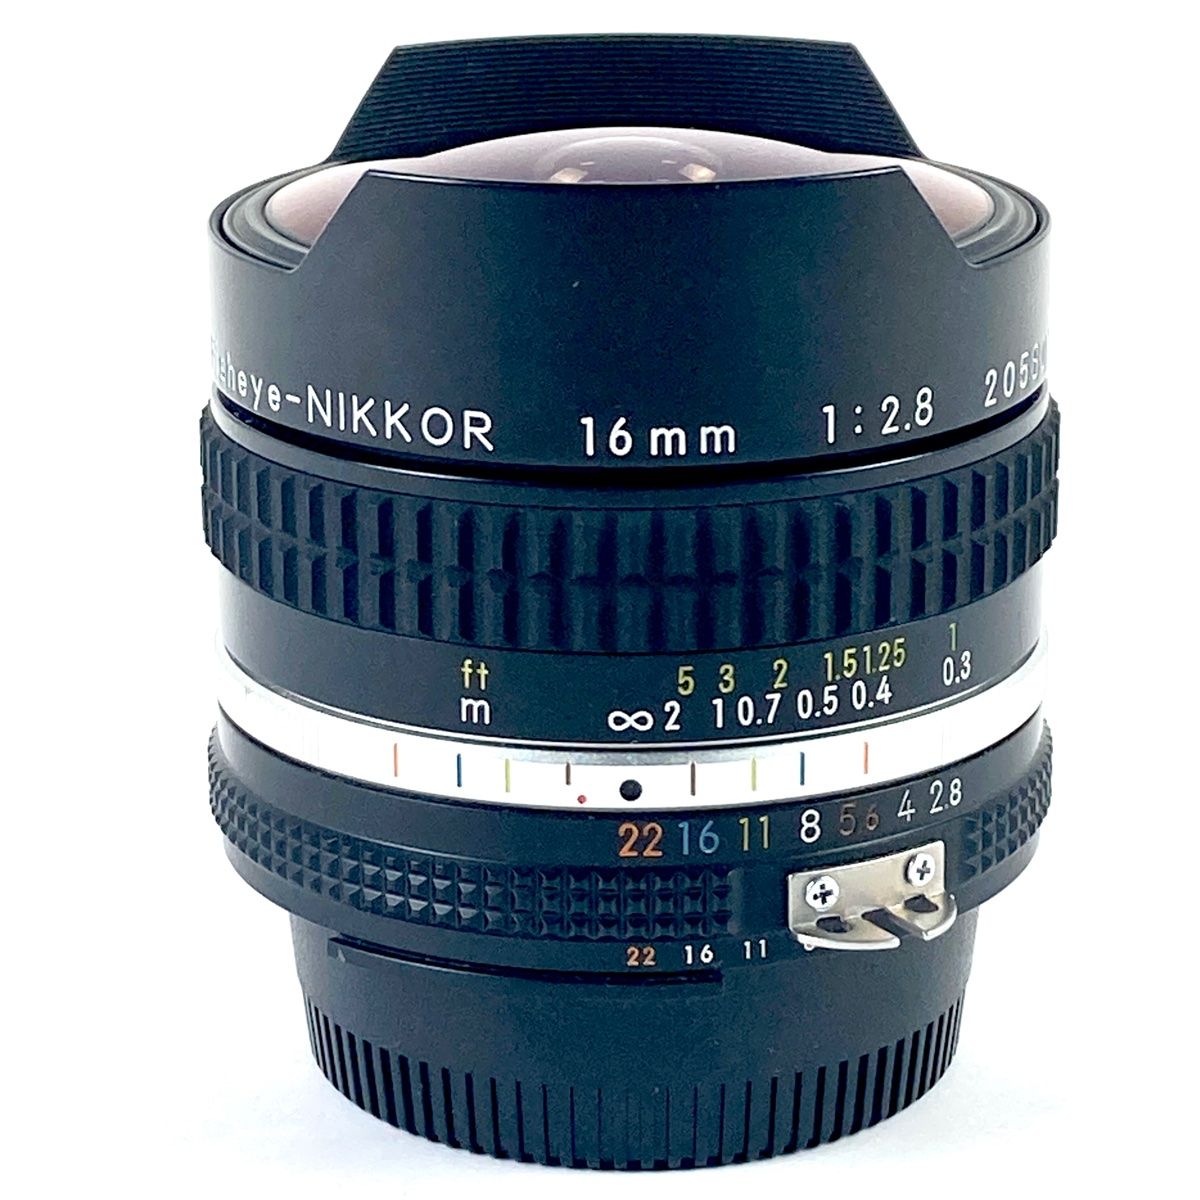 有名な高級ブランド Nikon ai-s Fisheye-NIKKOR 16mm F2.8 レンズ(中古 ...